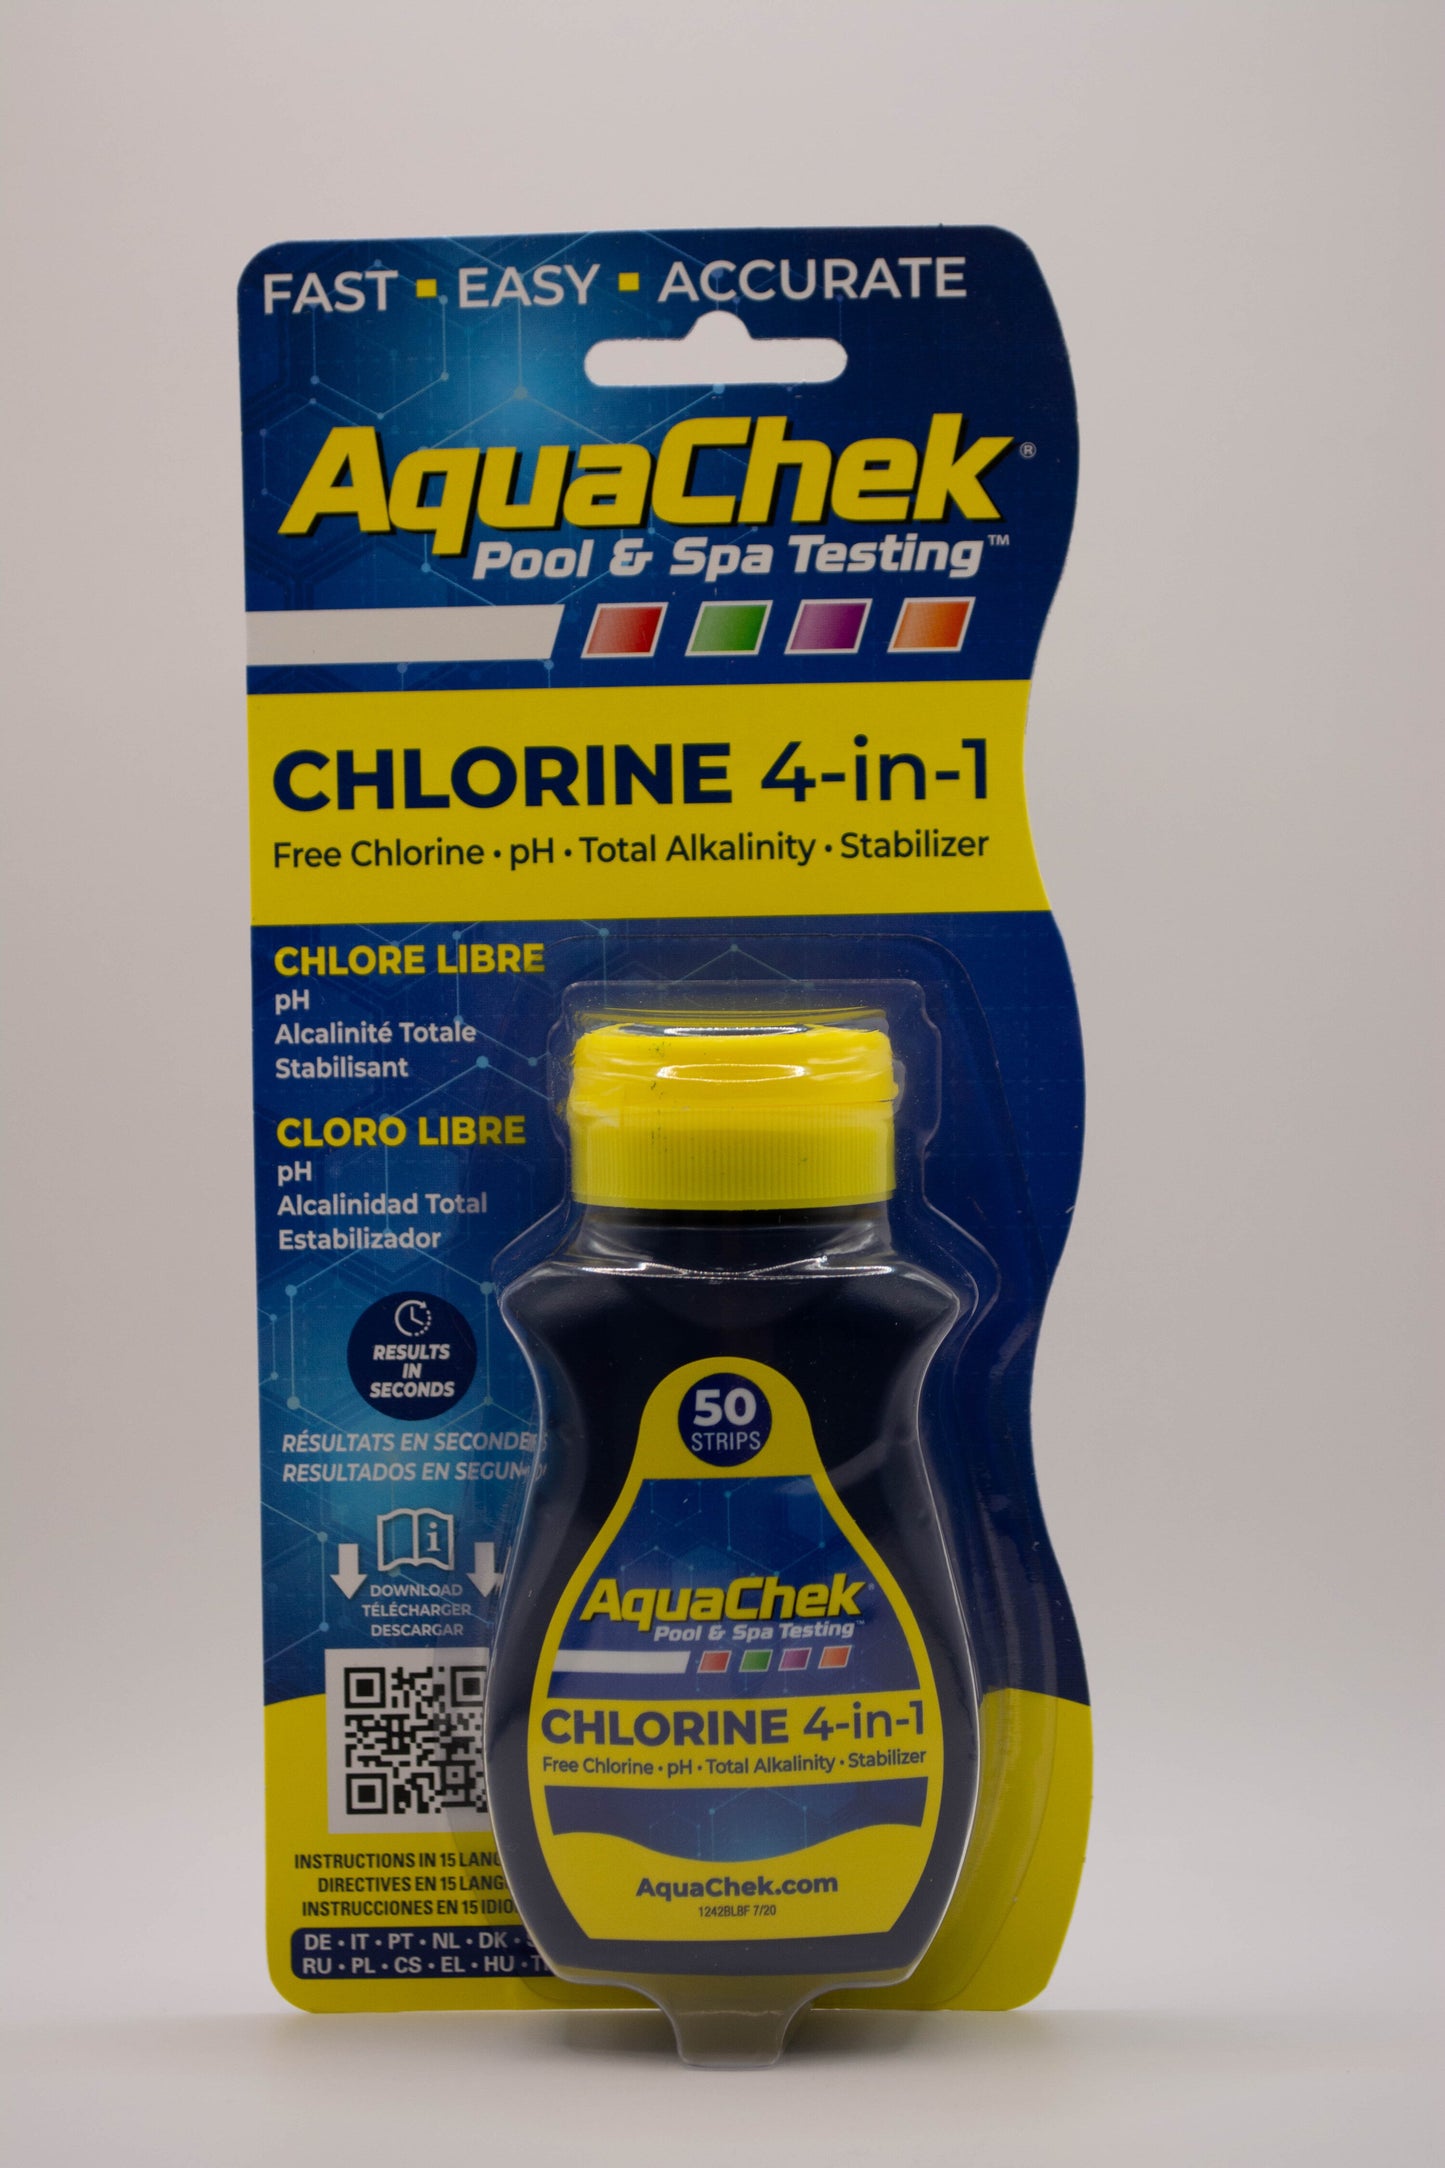 Chlorine 4-in-1